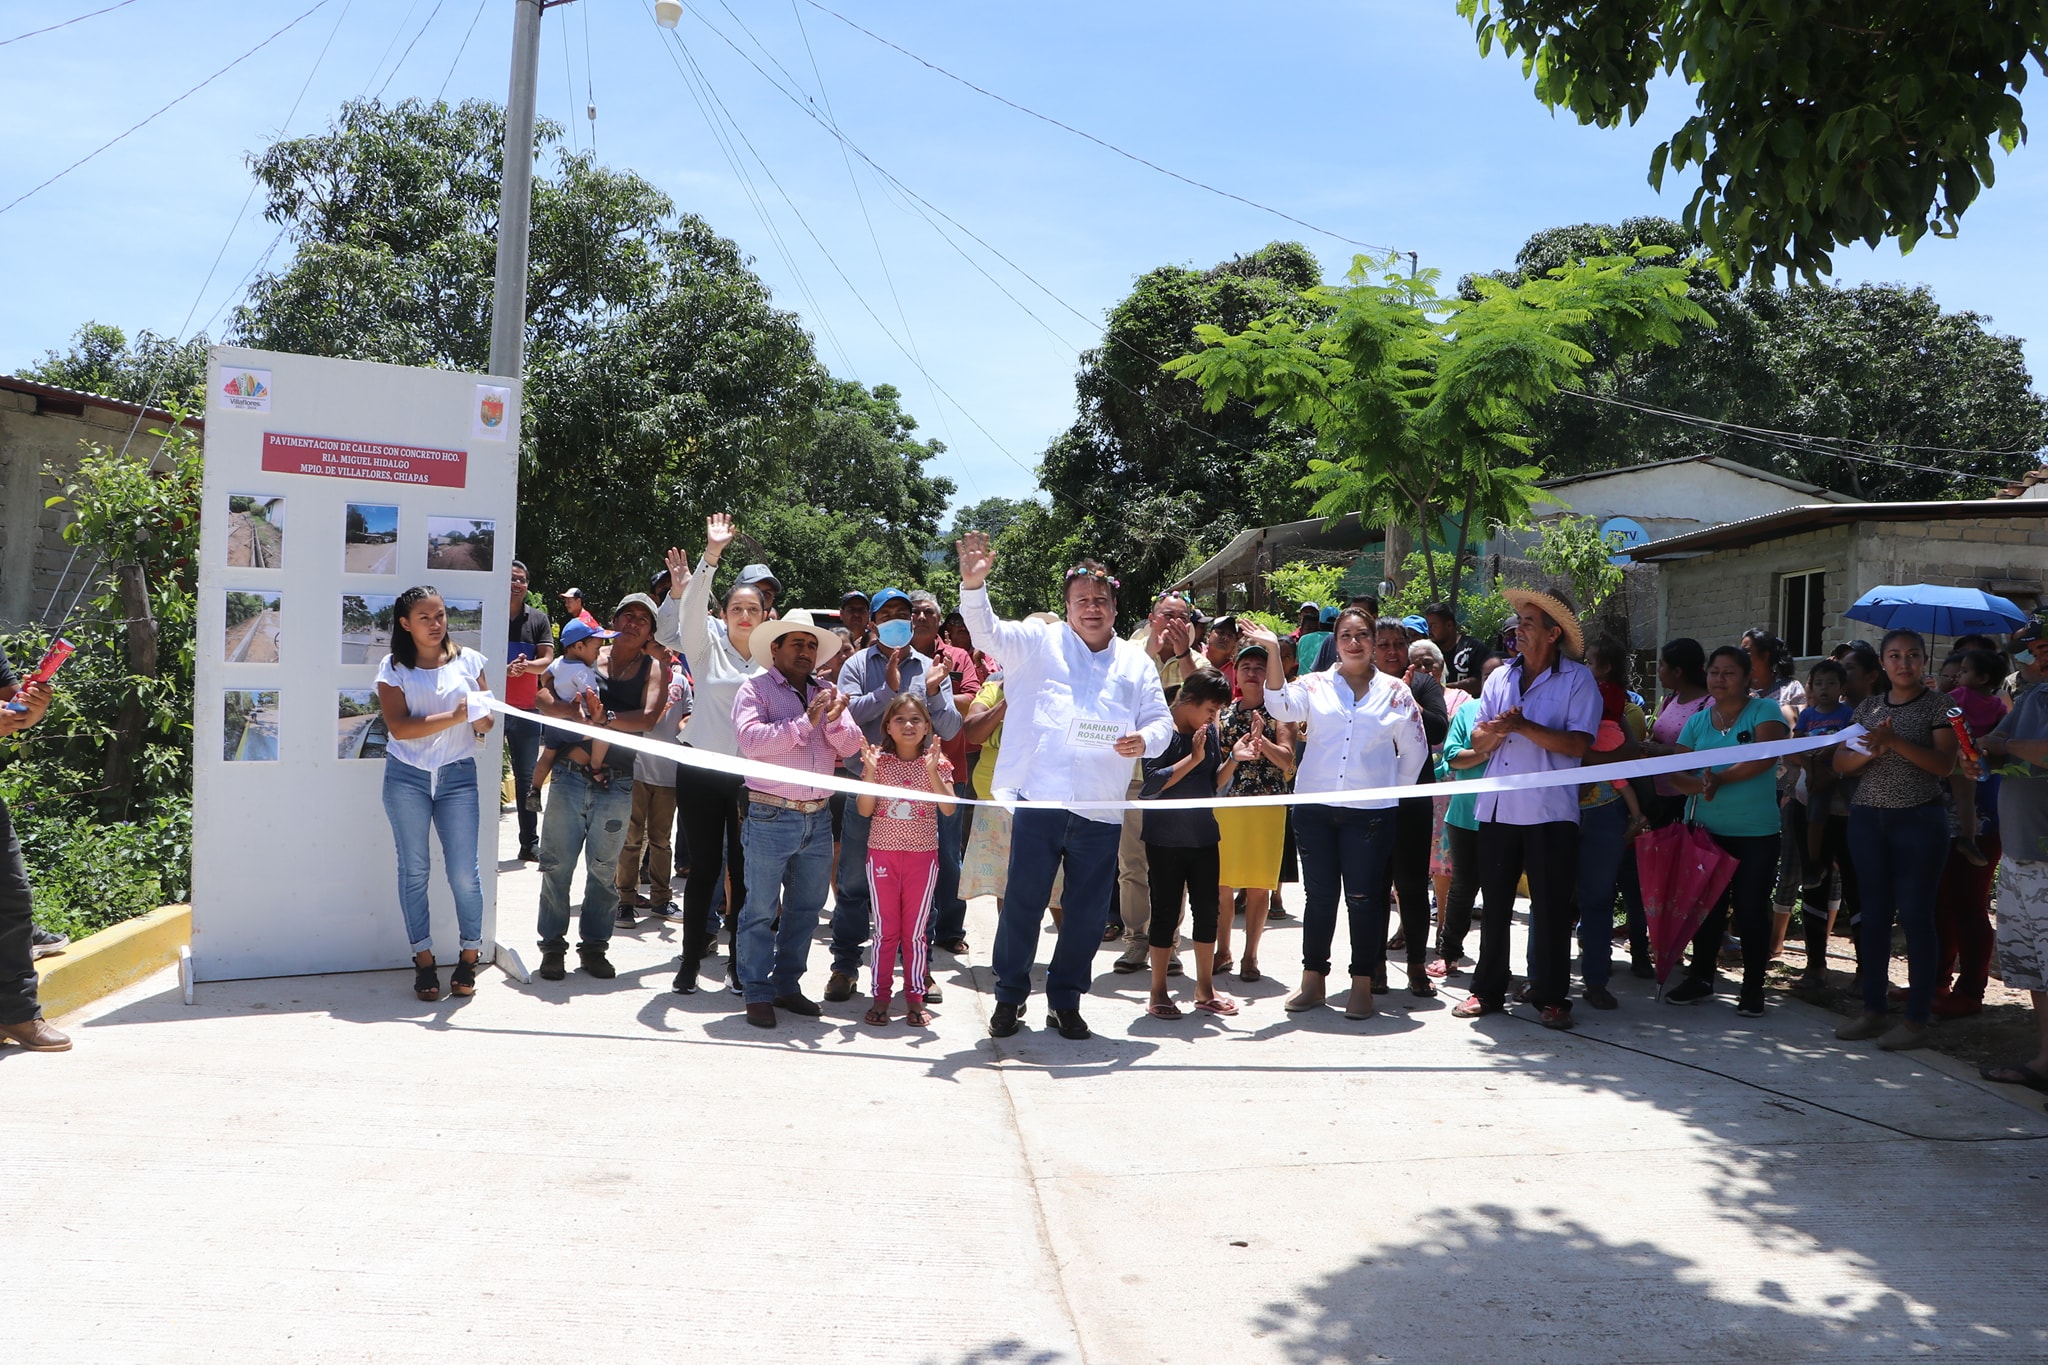 Alcalde Mariano Rosales Zuarth inaugura calles en Ranchería Miguel Hidalgo